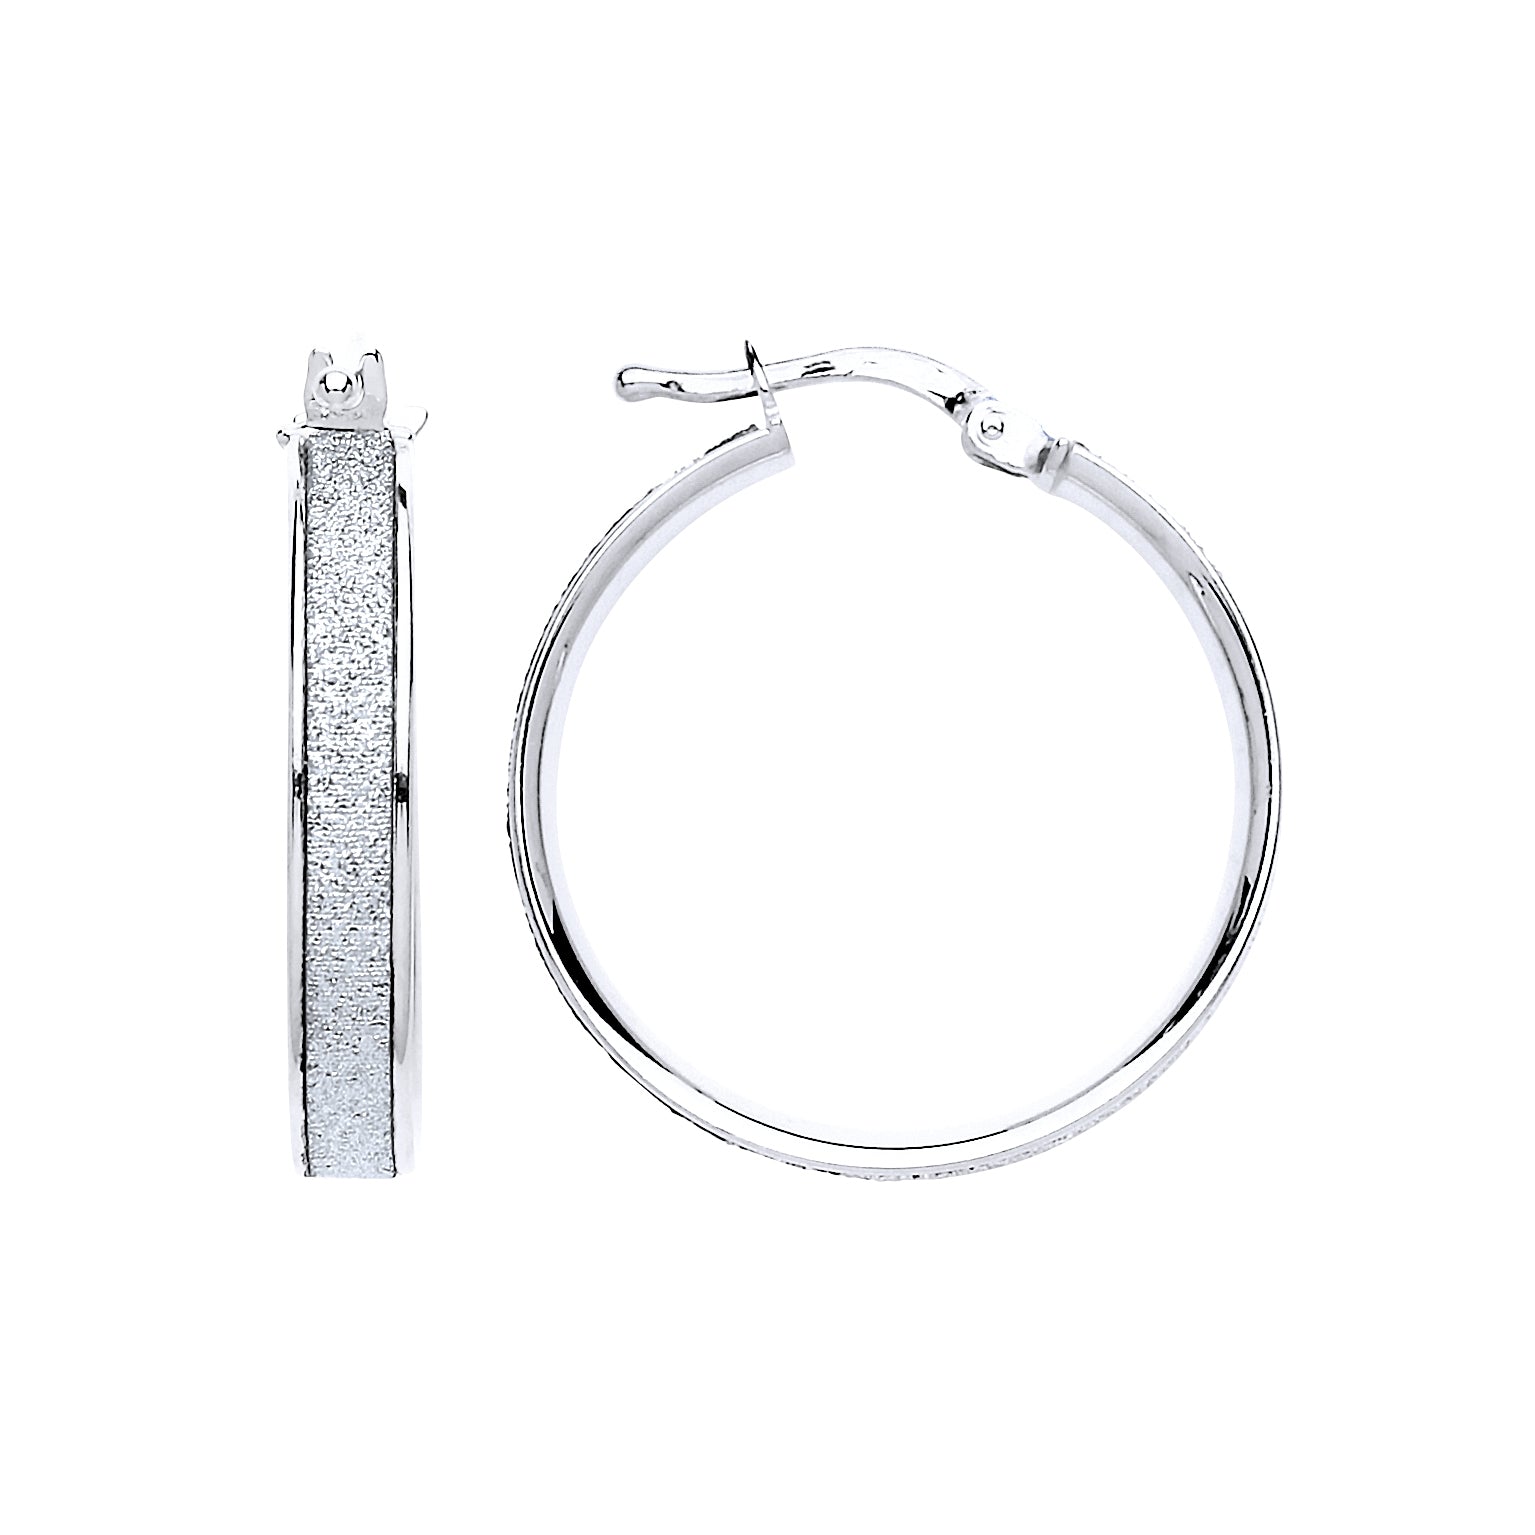 Silver  Moondust Hoop Earrings 23mm - GVE608RH